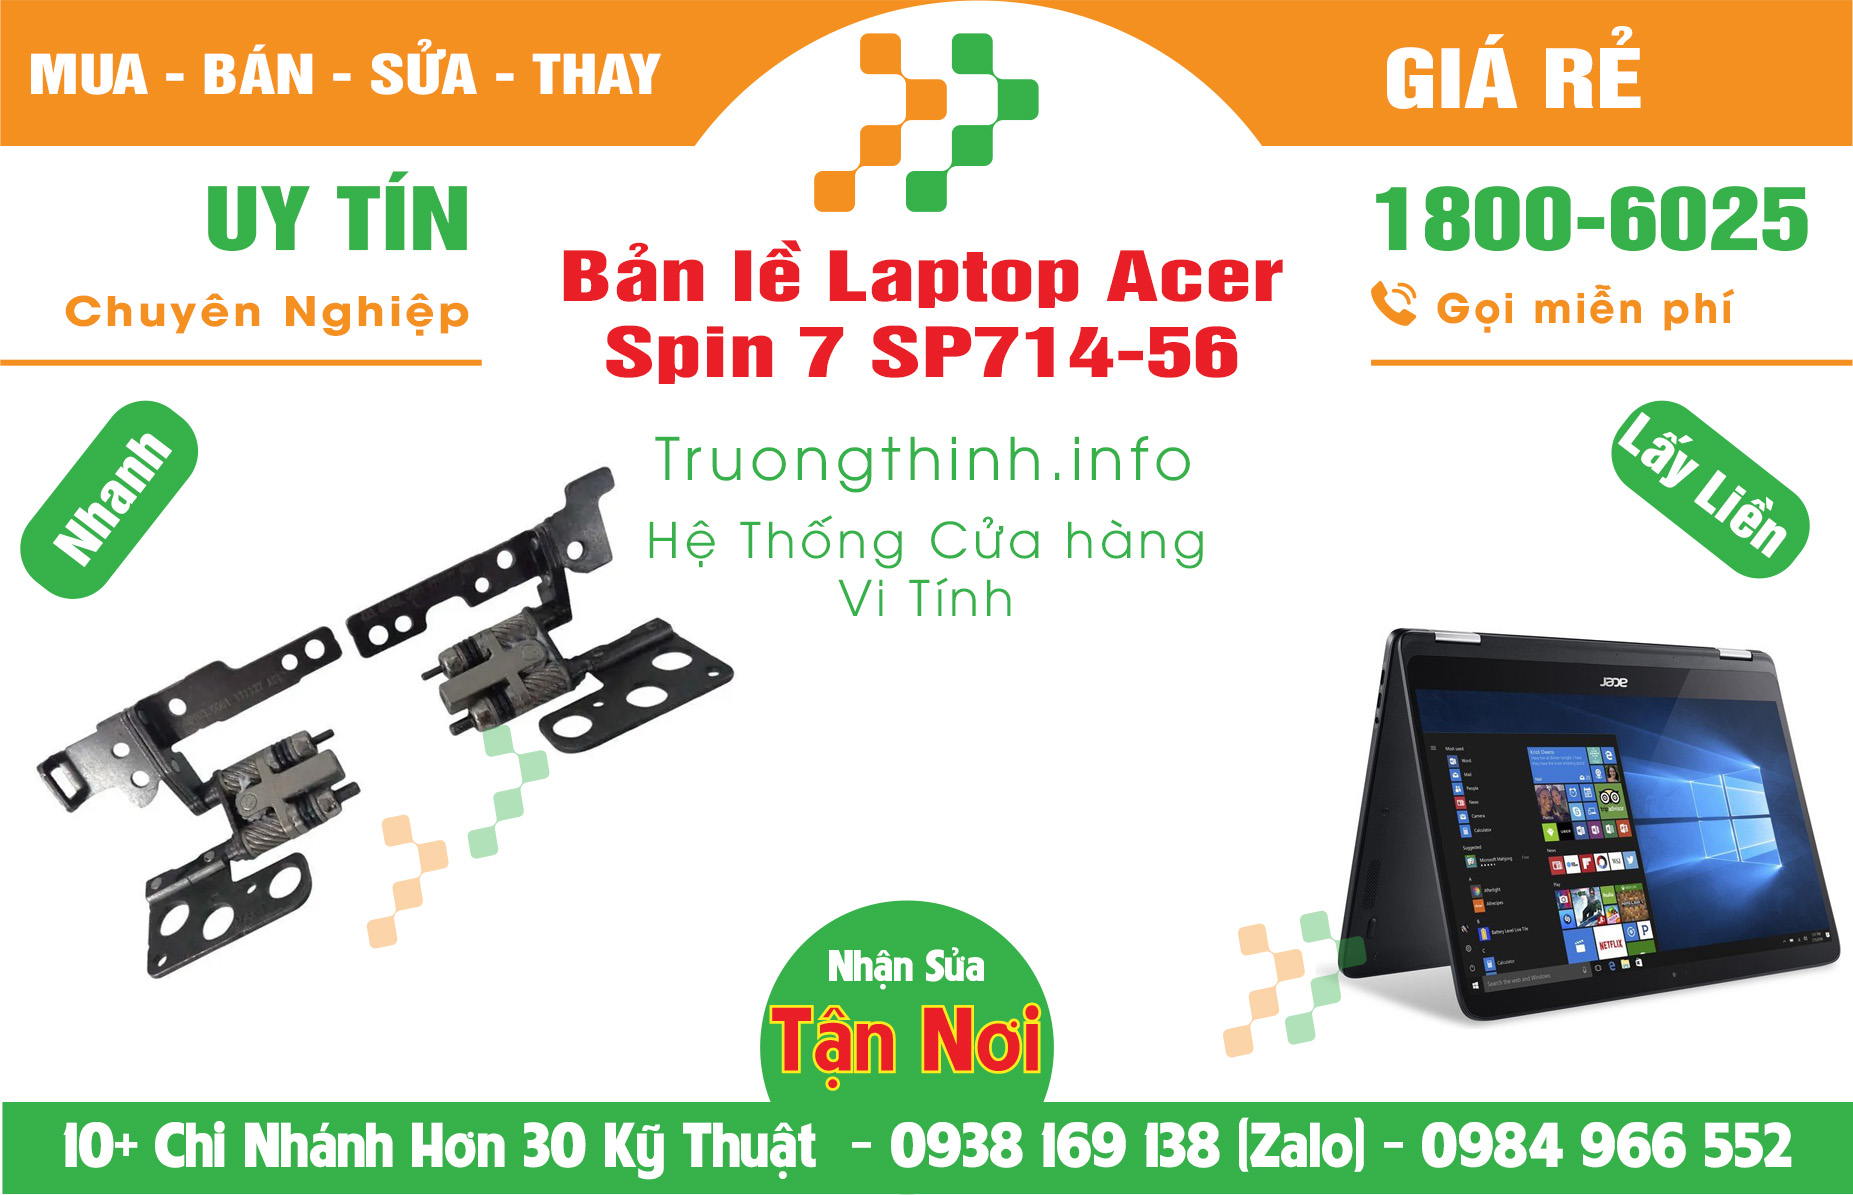 Mua Bán Bản lề Laptop Acer Spin 7 SP714-56 Giá Rẻ | Máy Tính Trường Thịnh Giá Rẻ